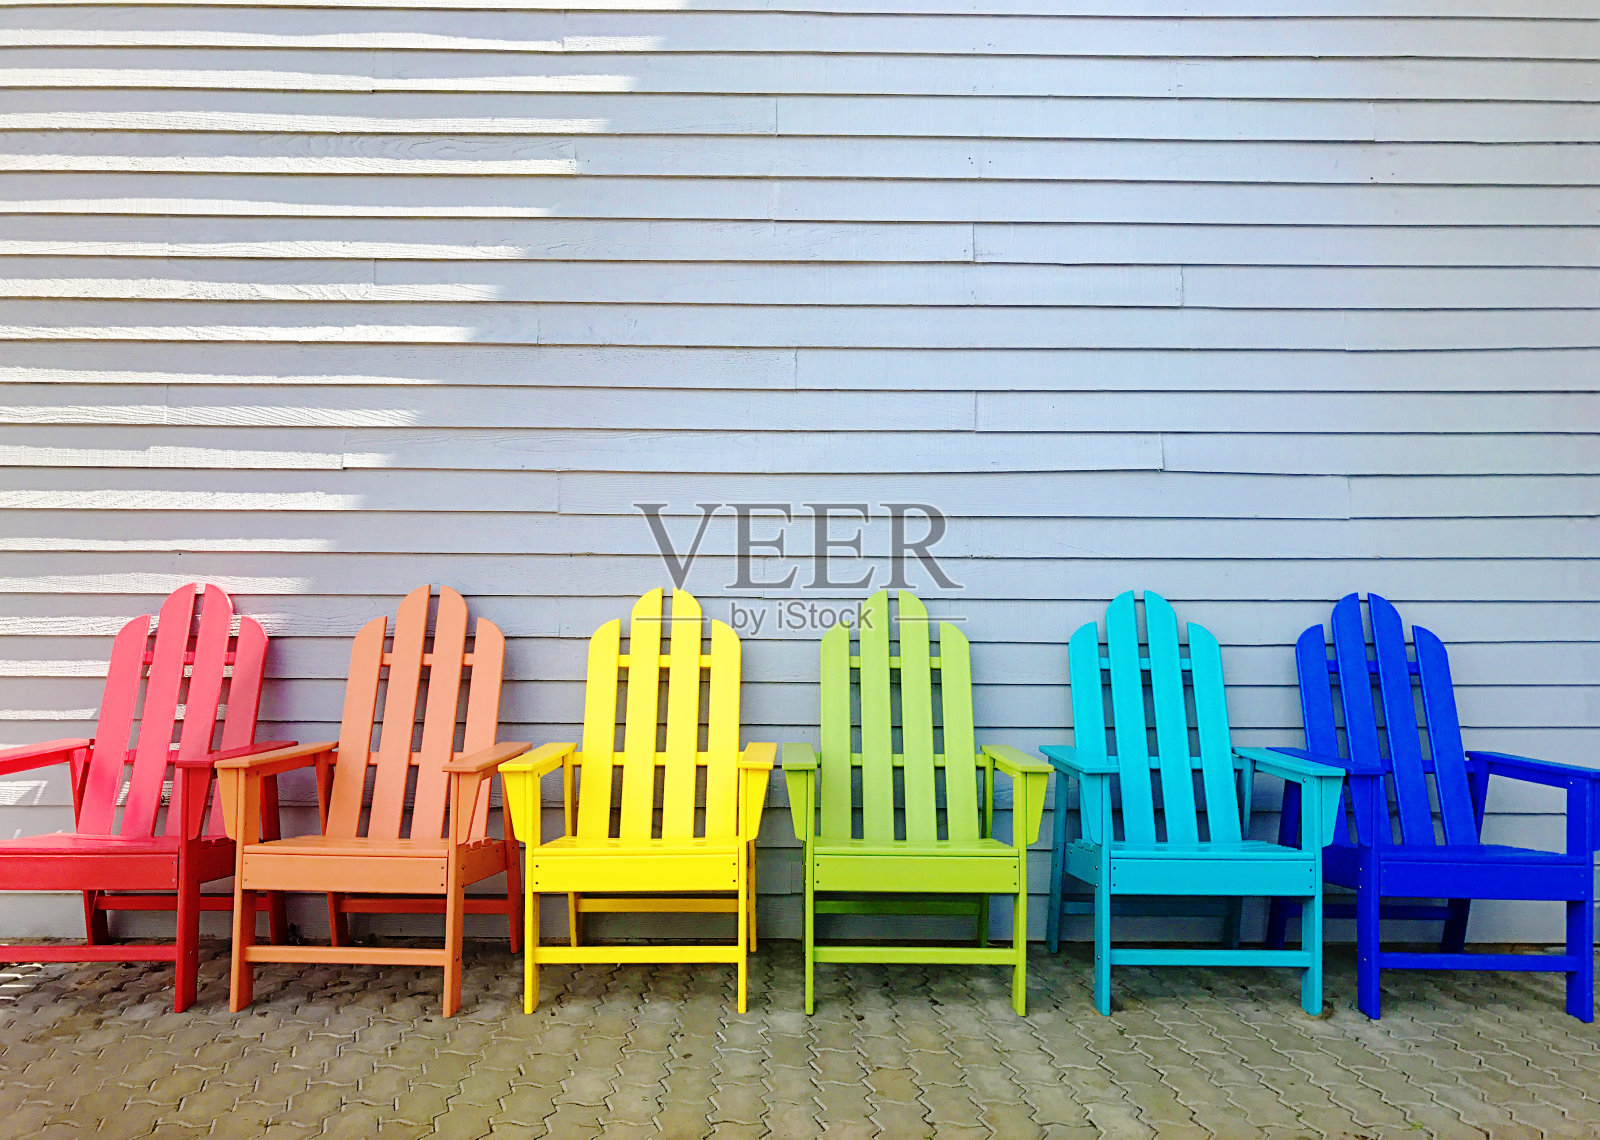 彩虹度假阿迪朗达克椅子在庭院照片摄影图片